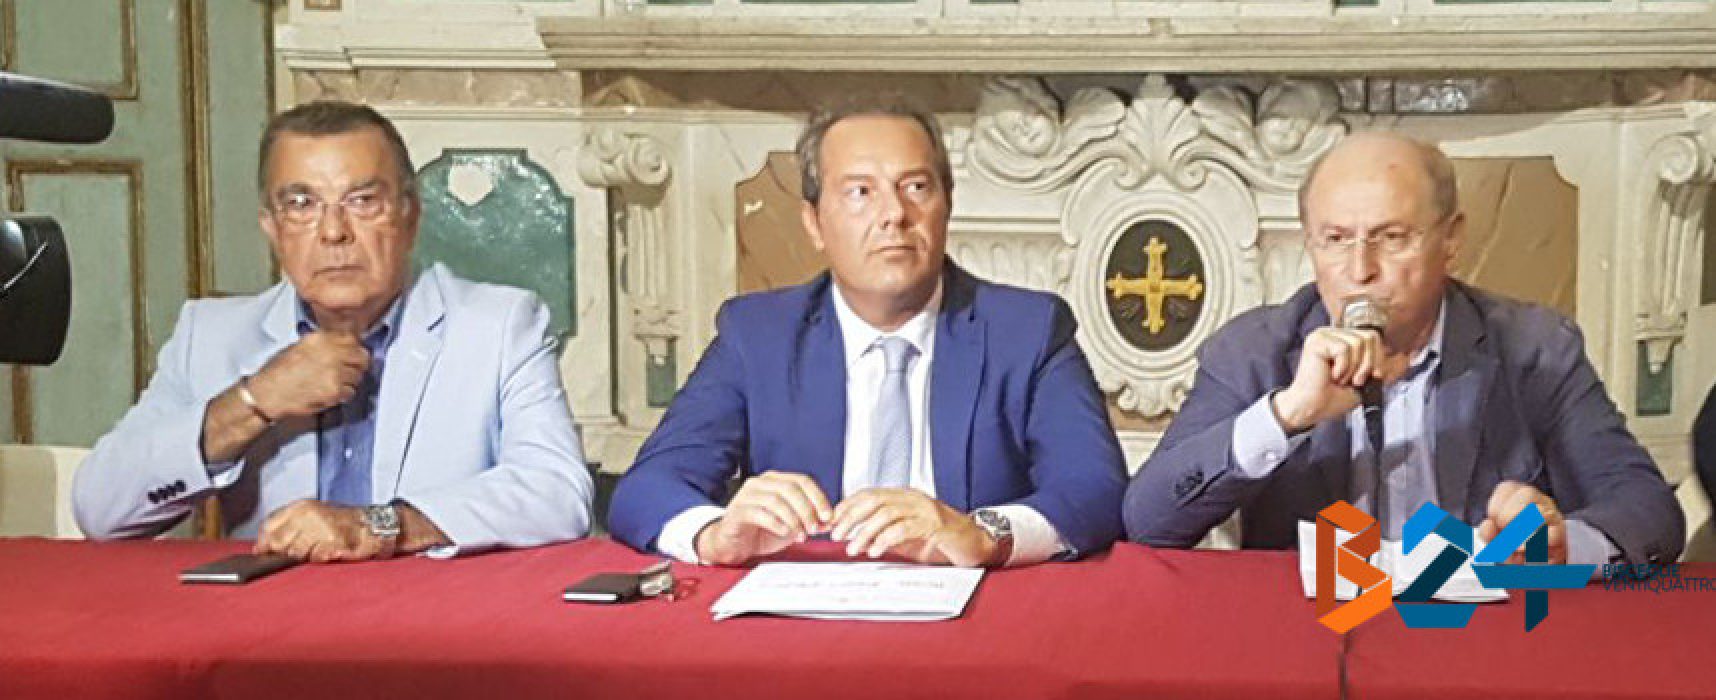 Chiesto commissariamento Pd o dimissioni Angarano e Rigante, Spina: “Trasversalismi devono finire”